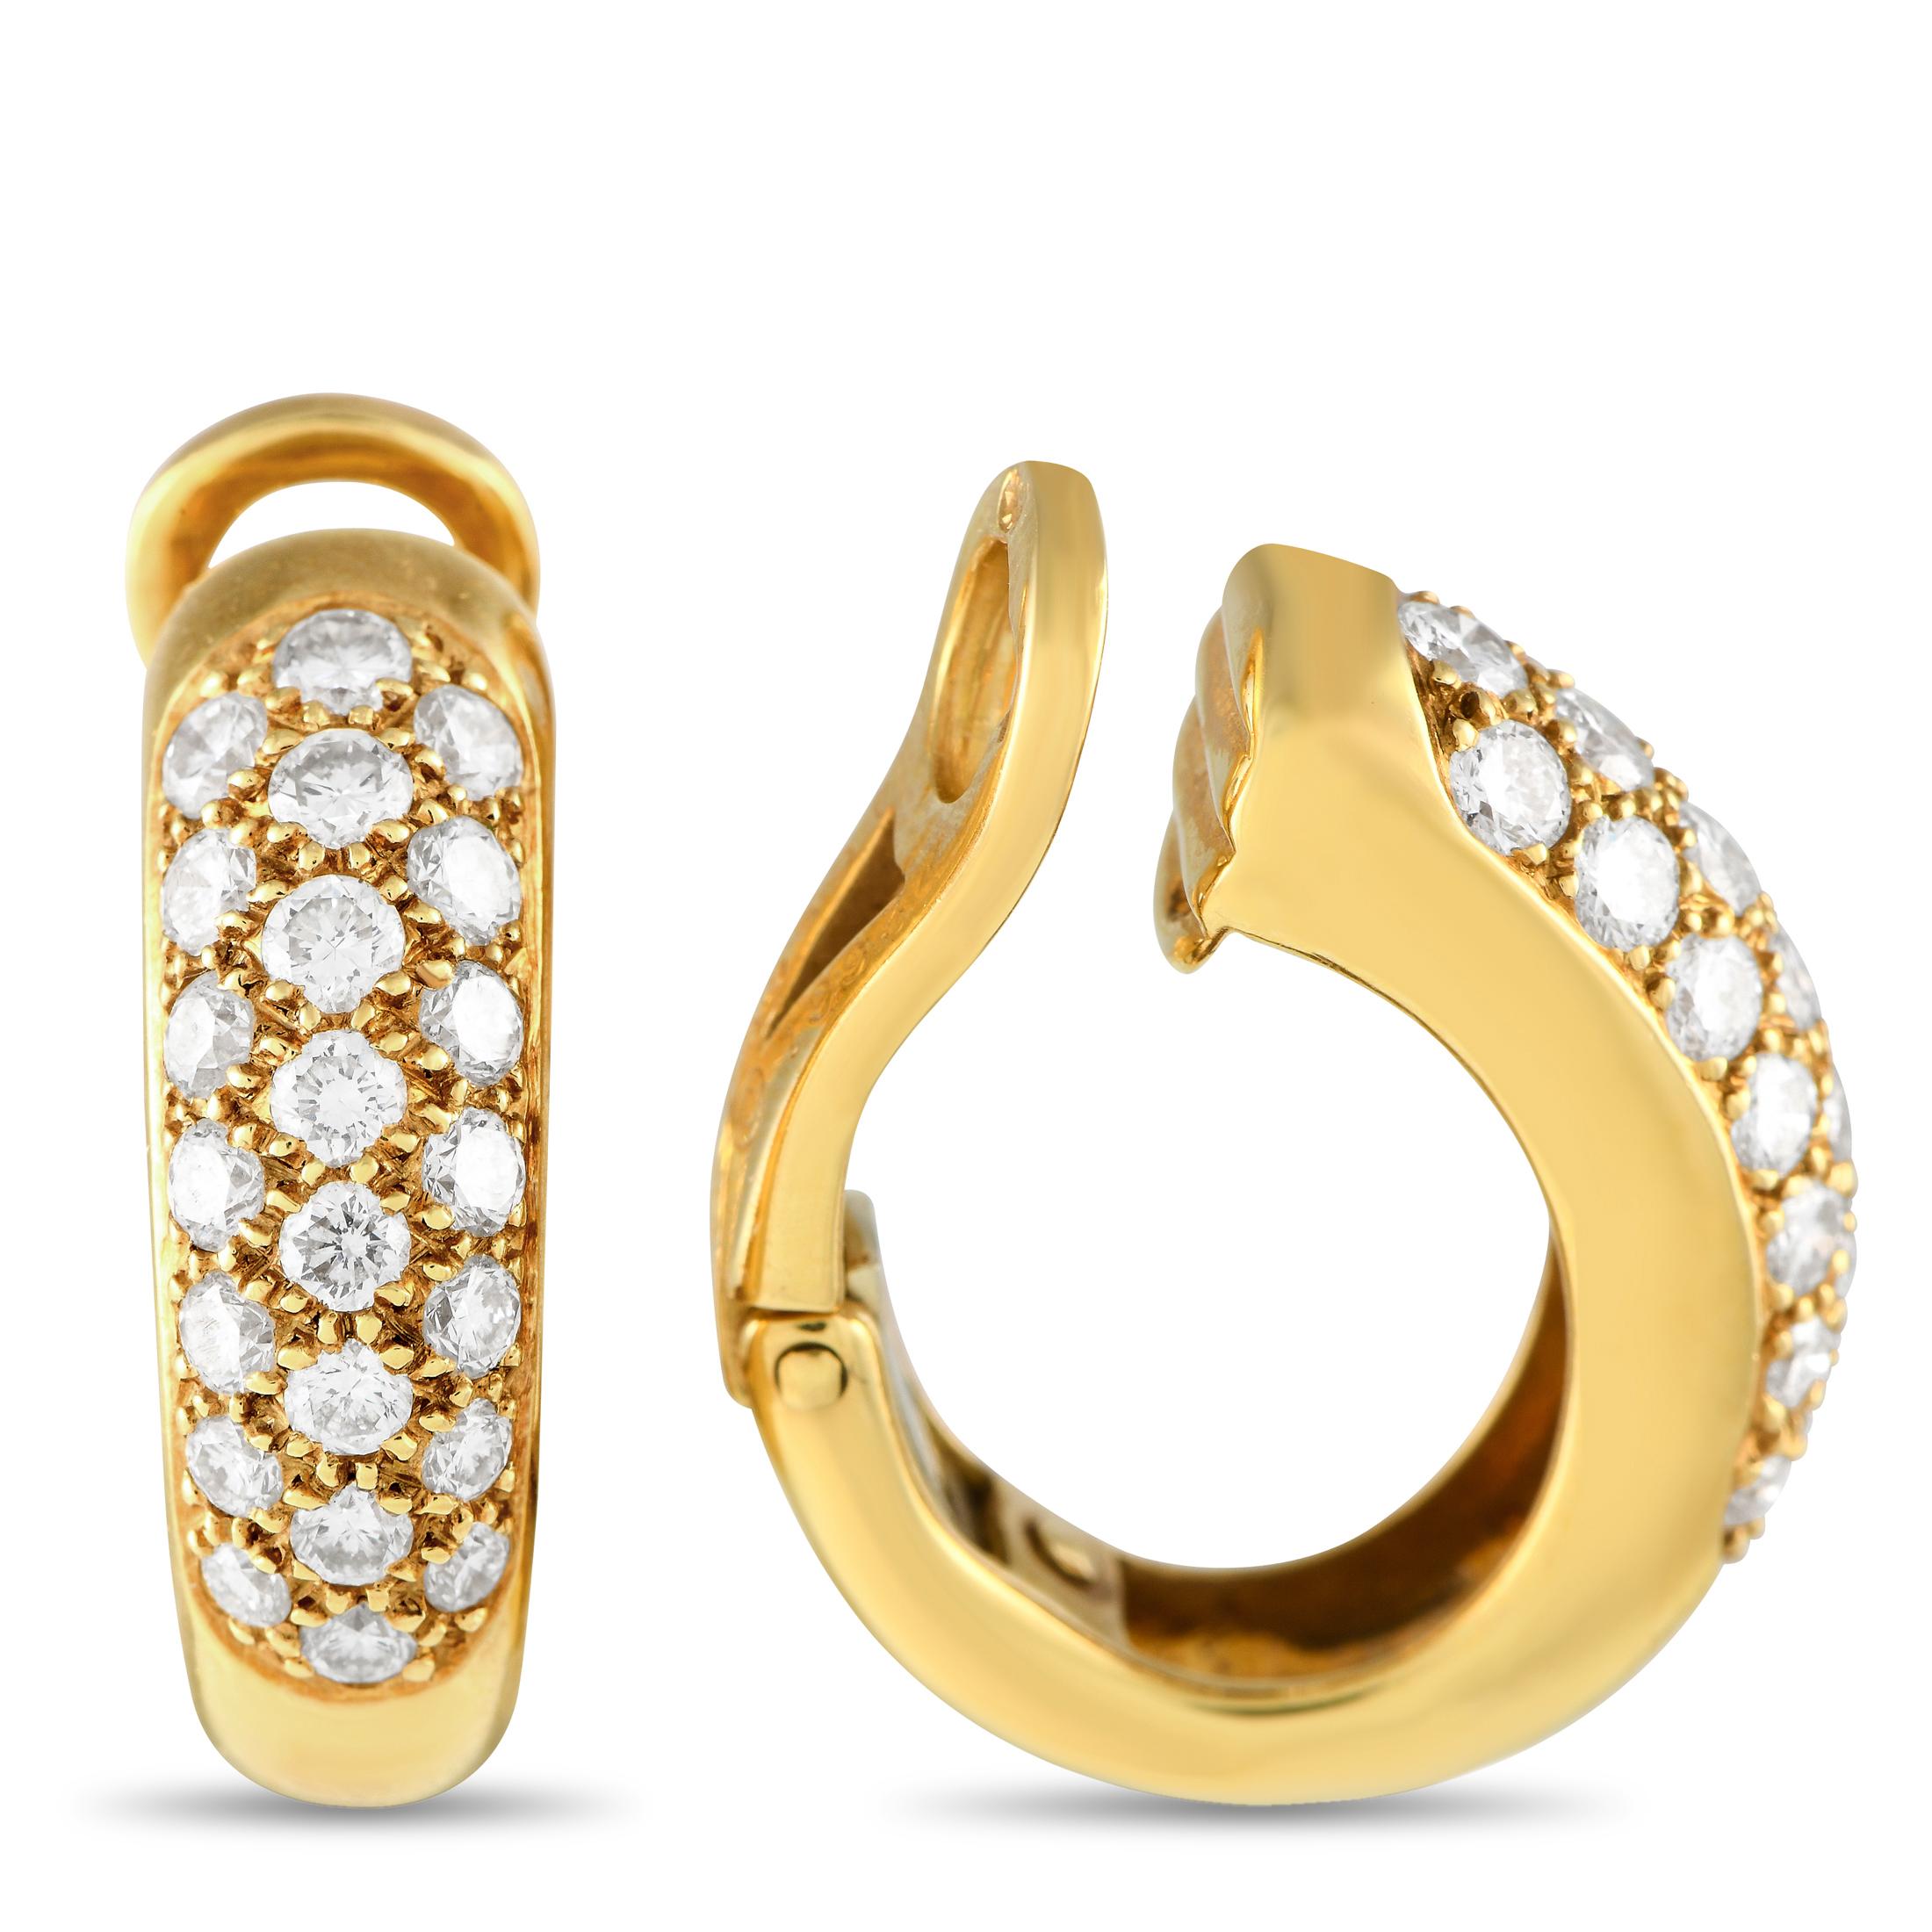 Funkelnde Diamanten mit einem Gesamtgewicht von 1,0 Karat lassen diese Cartier-Ohrringe mühelos strahlen. Die opulente Fassung aus 18-karätigem Gelbgold zeichnet sich durch ein anmutig geschwungenes Design aus, das unbestreitbar zeitlos ist. Jeder